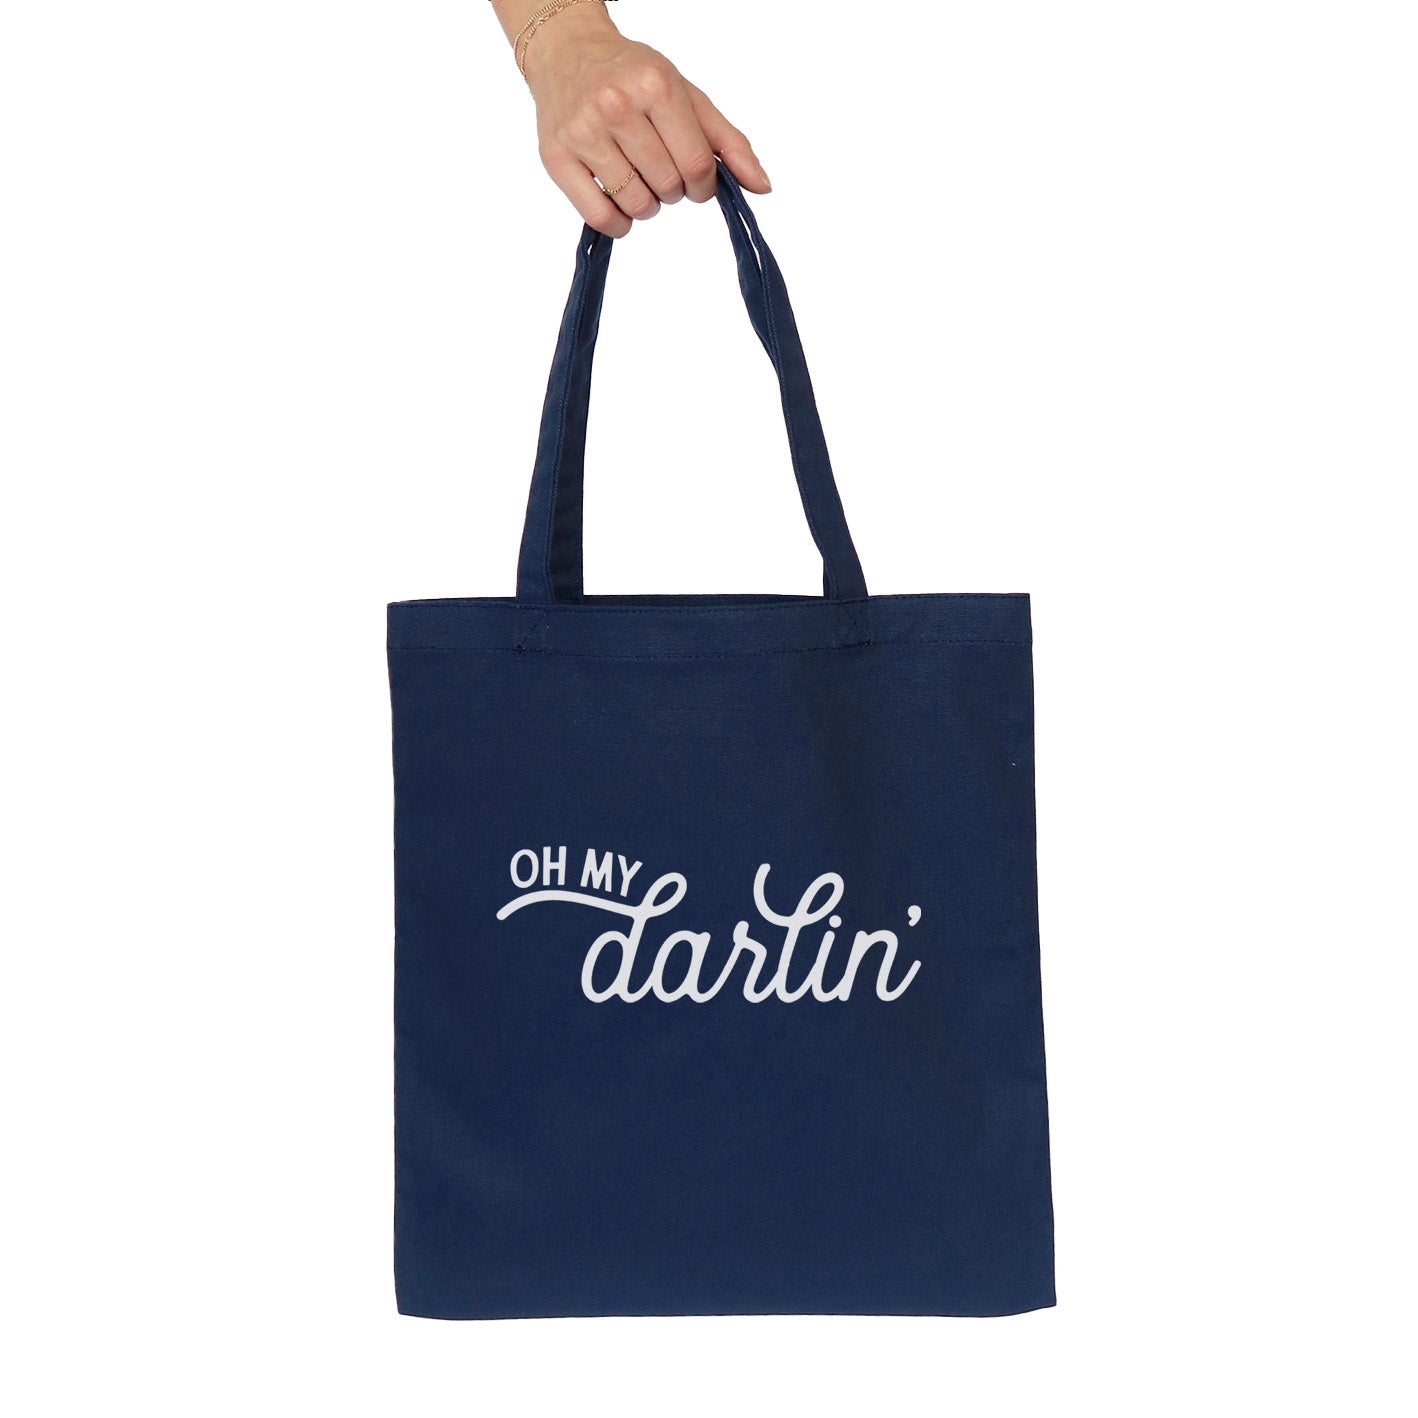 Oh My Darlin' Cursive Tote Bag